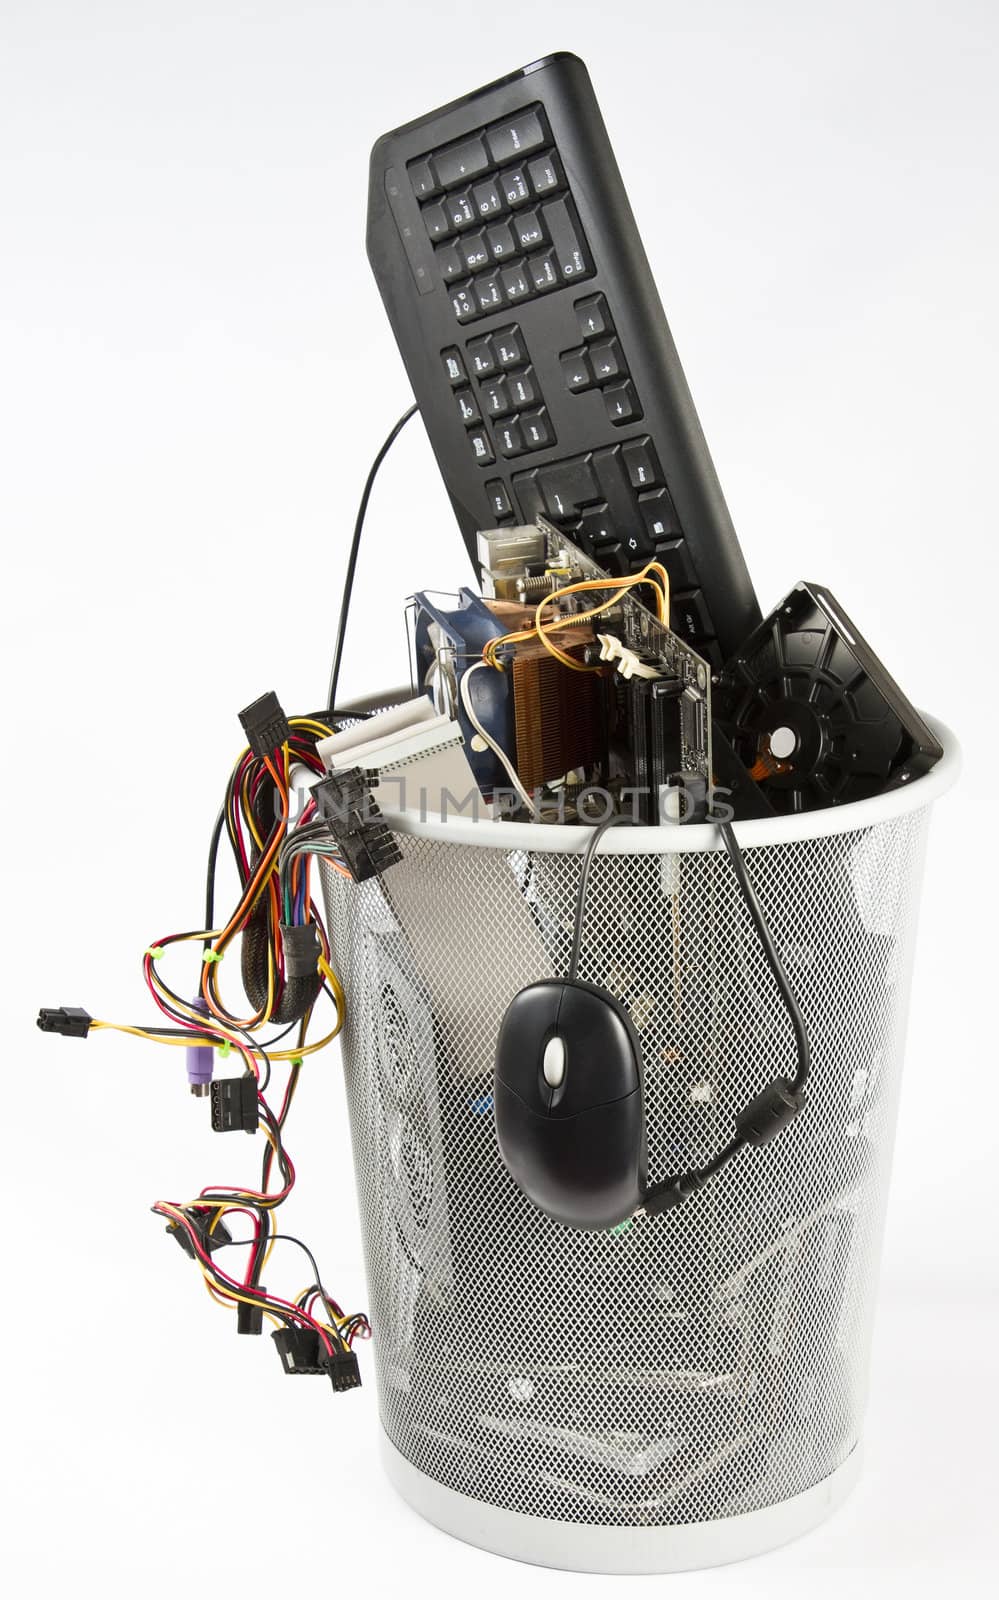 Computer trash in wastebasket by gewoldi